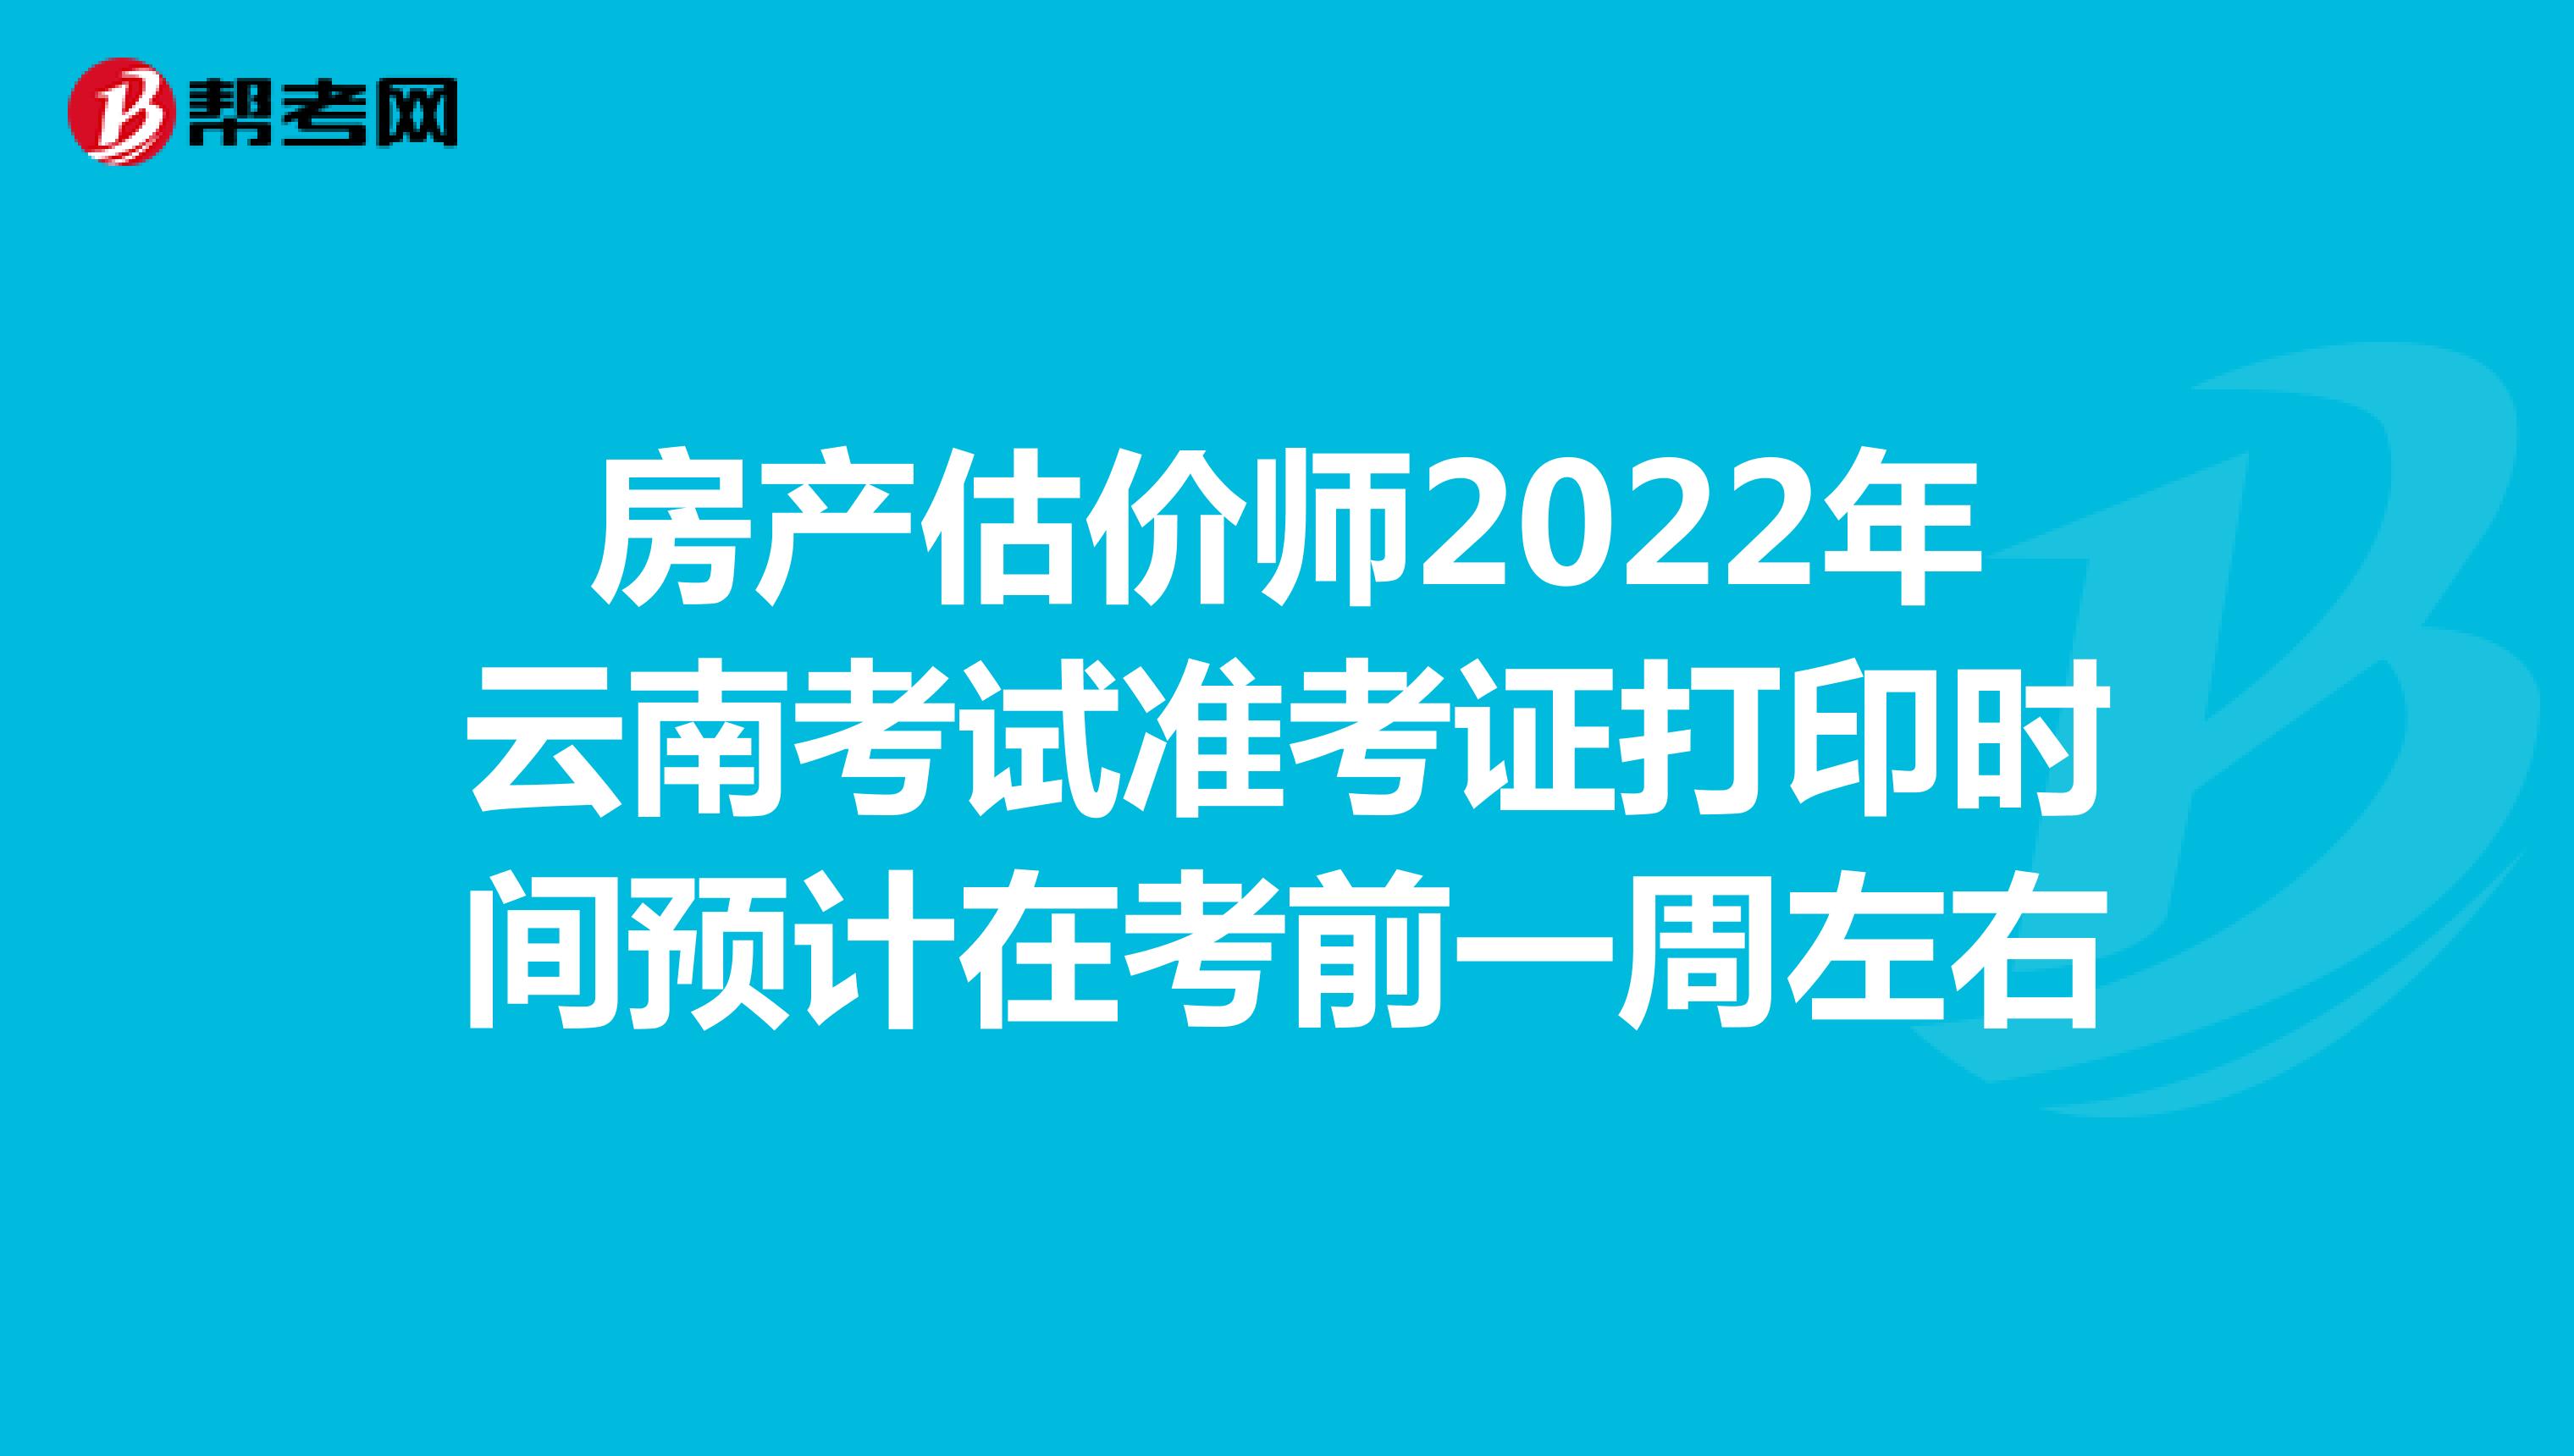 房产估价师2022年云南考试准考证打印时间预计在考前一周左右